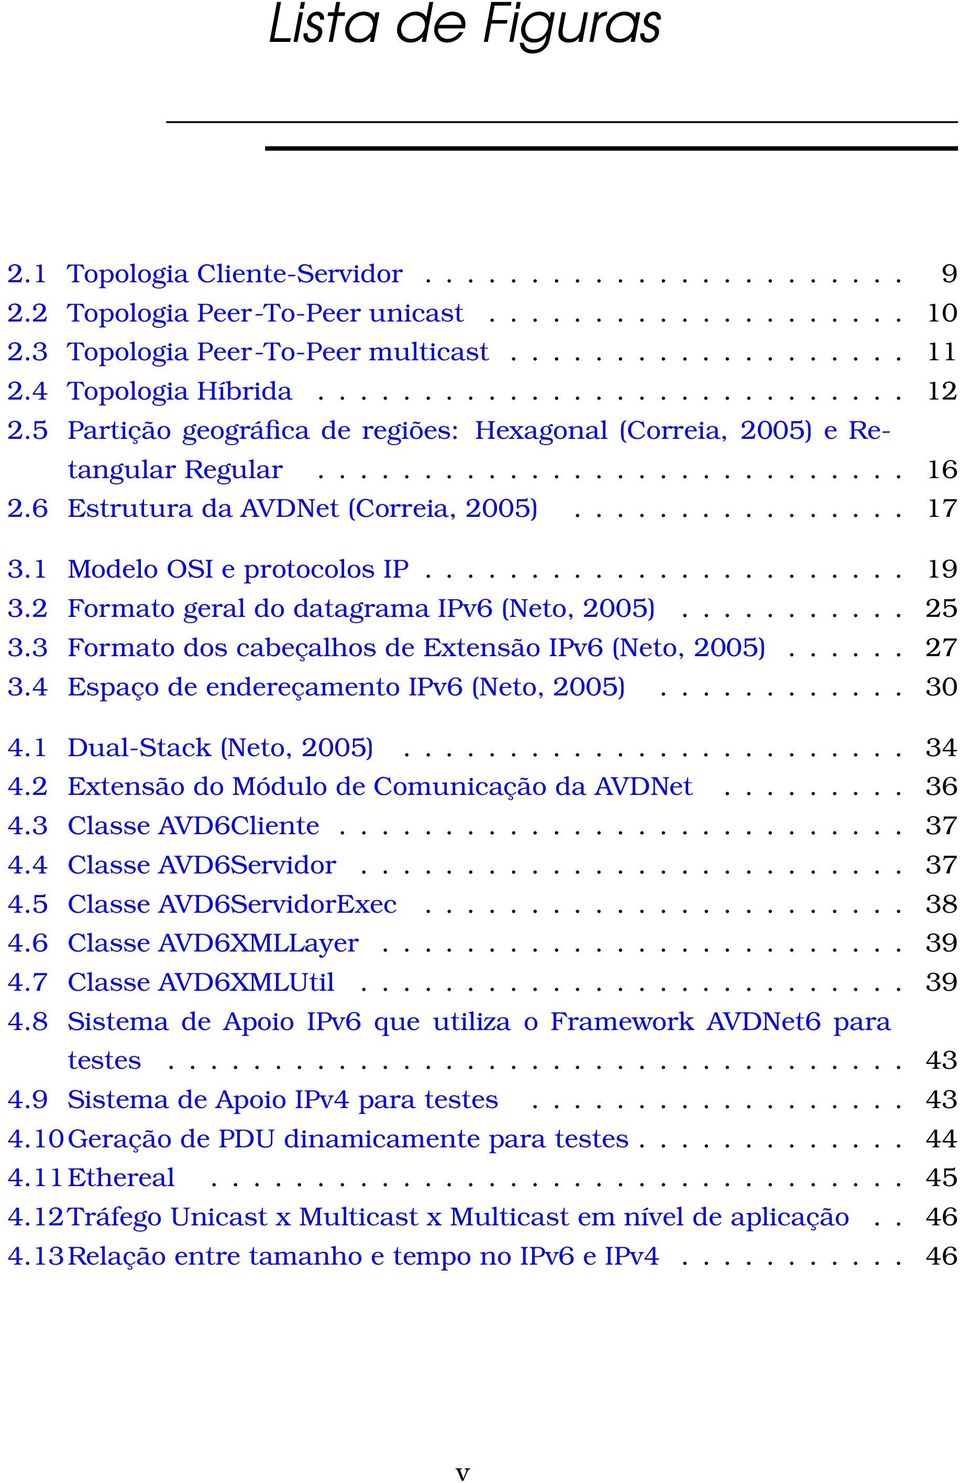 6 Estrutura da AVDNet (Correia, 2005)................ 17 3.1 Modelo OSI e protocolos IP....................... 19 3.2 Formato geral do datagrama IPv6 (Neto, 2005)........... 25 3.